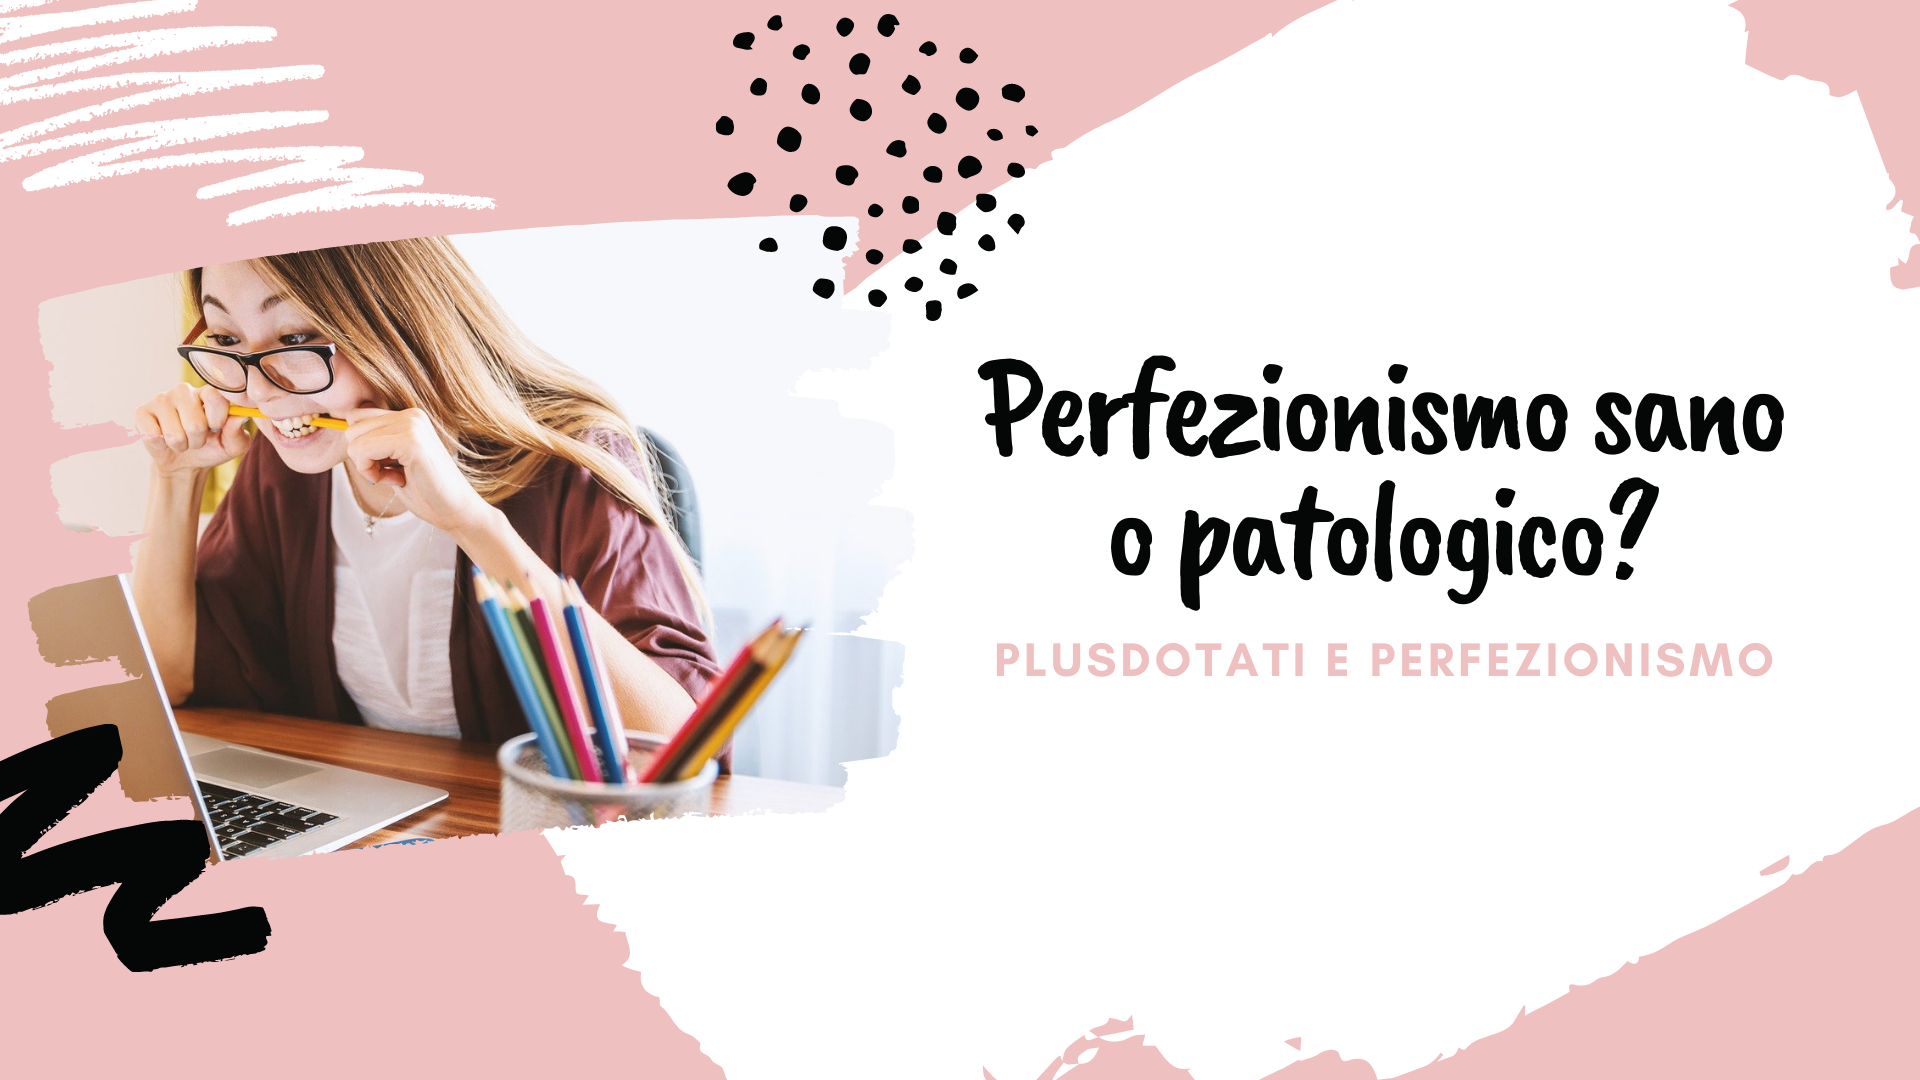 Perfezionismo sano o patologico?